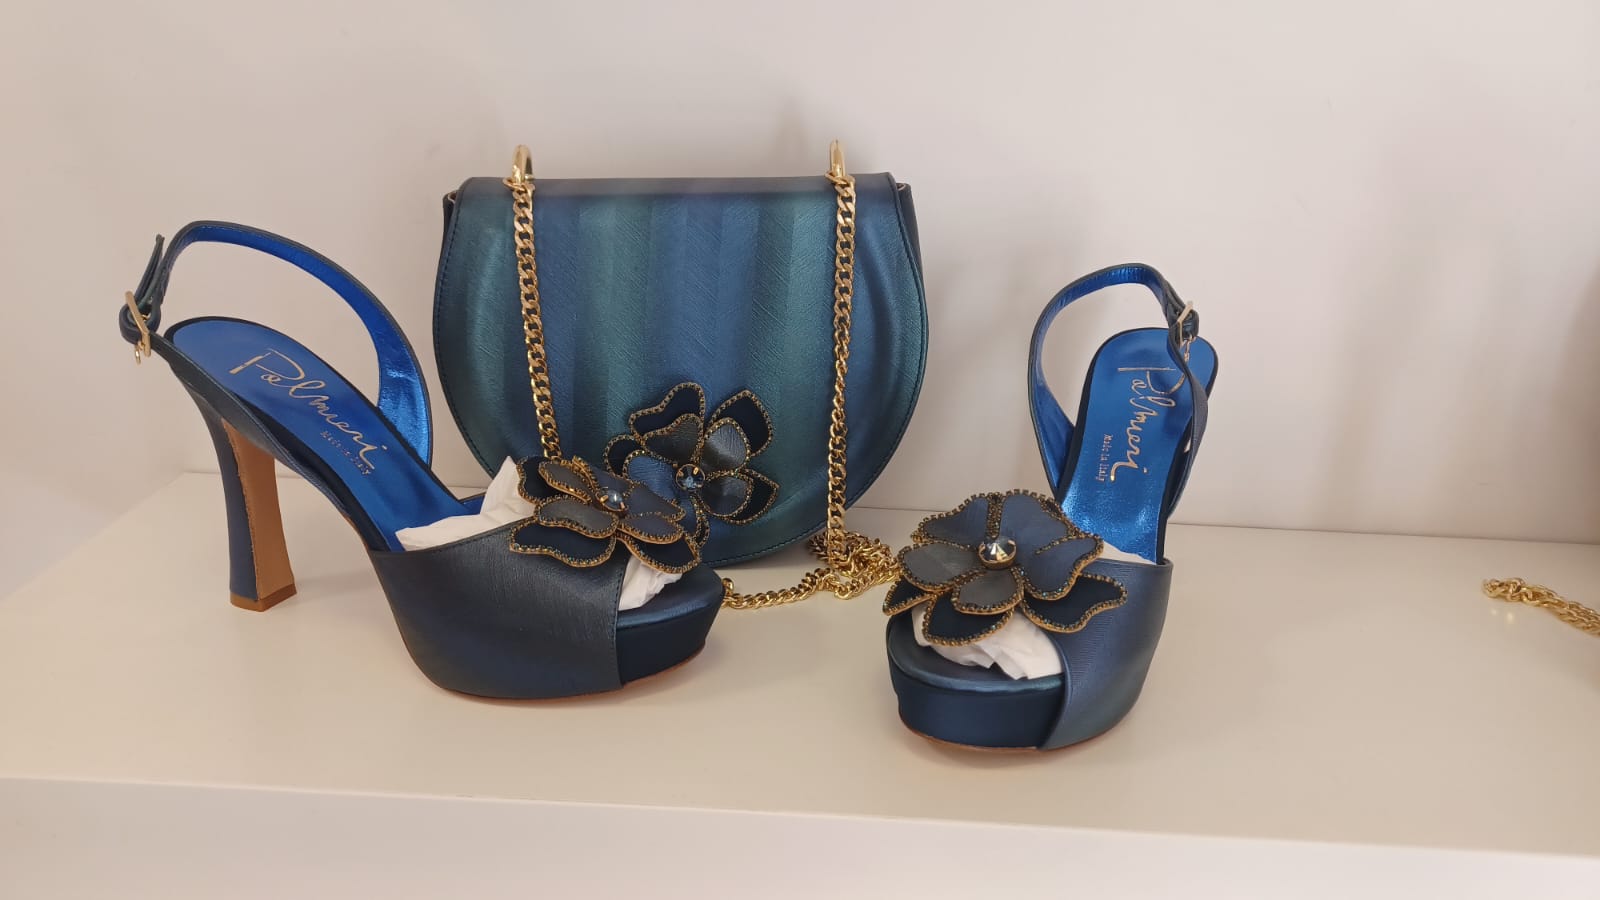 Luxury Italian shoe and bags - Godshandfashion -